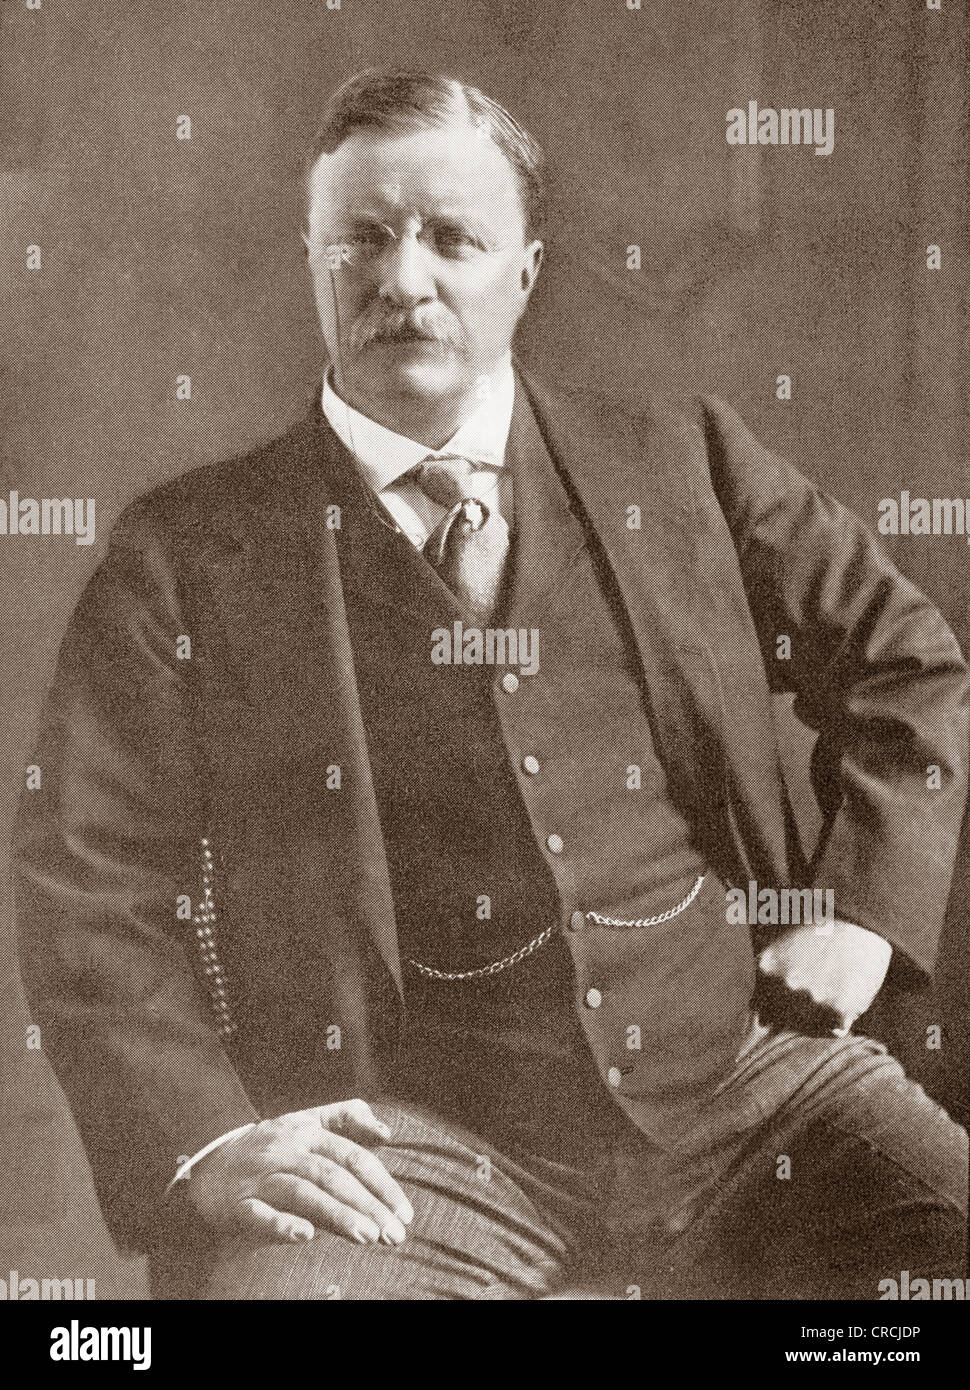 Teodoro "" di Teddy Roosevelt, 1858 - 1919. Ventiseiesimo Presidente degli Stati Uniti d'America. A partire dall'anno 1910 illustrata. Foto Stock